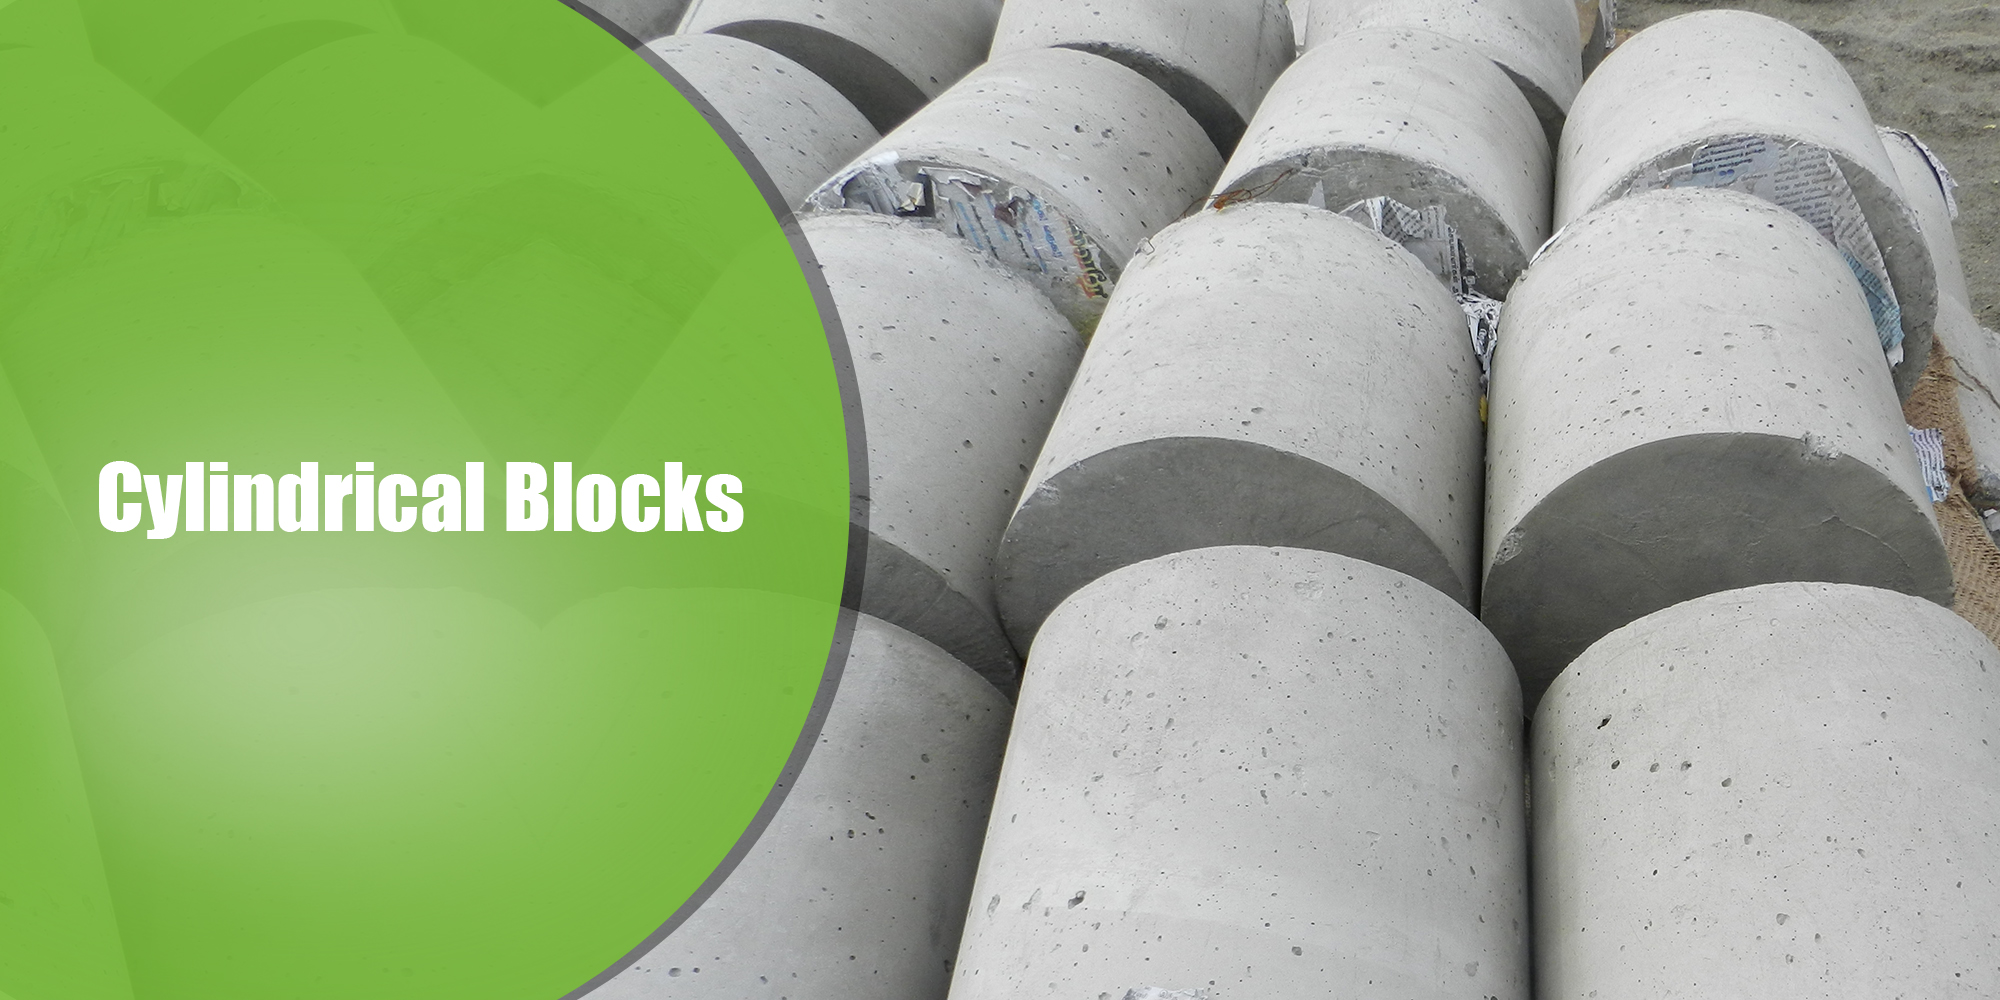 Ashok Enterprises - Hollow Blocks, Paver blocks Manufacturers in Chennai